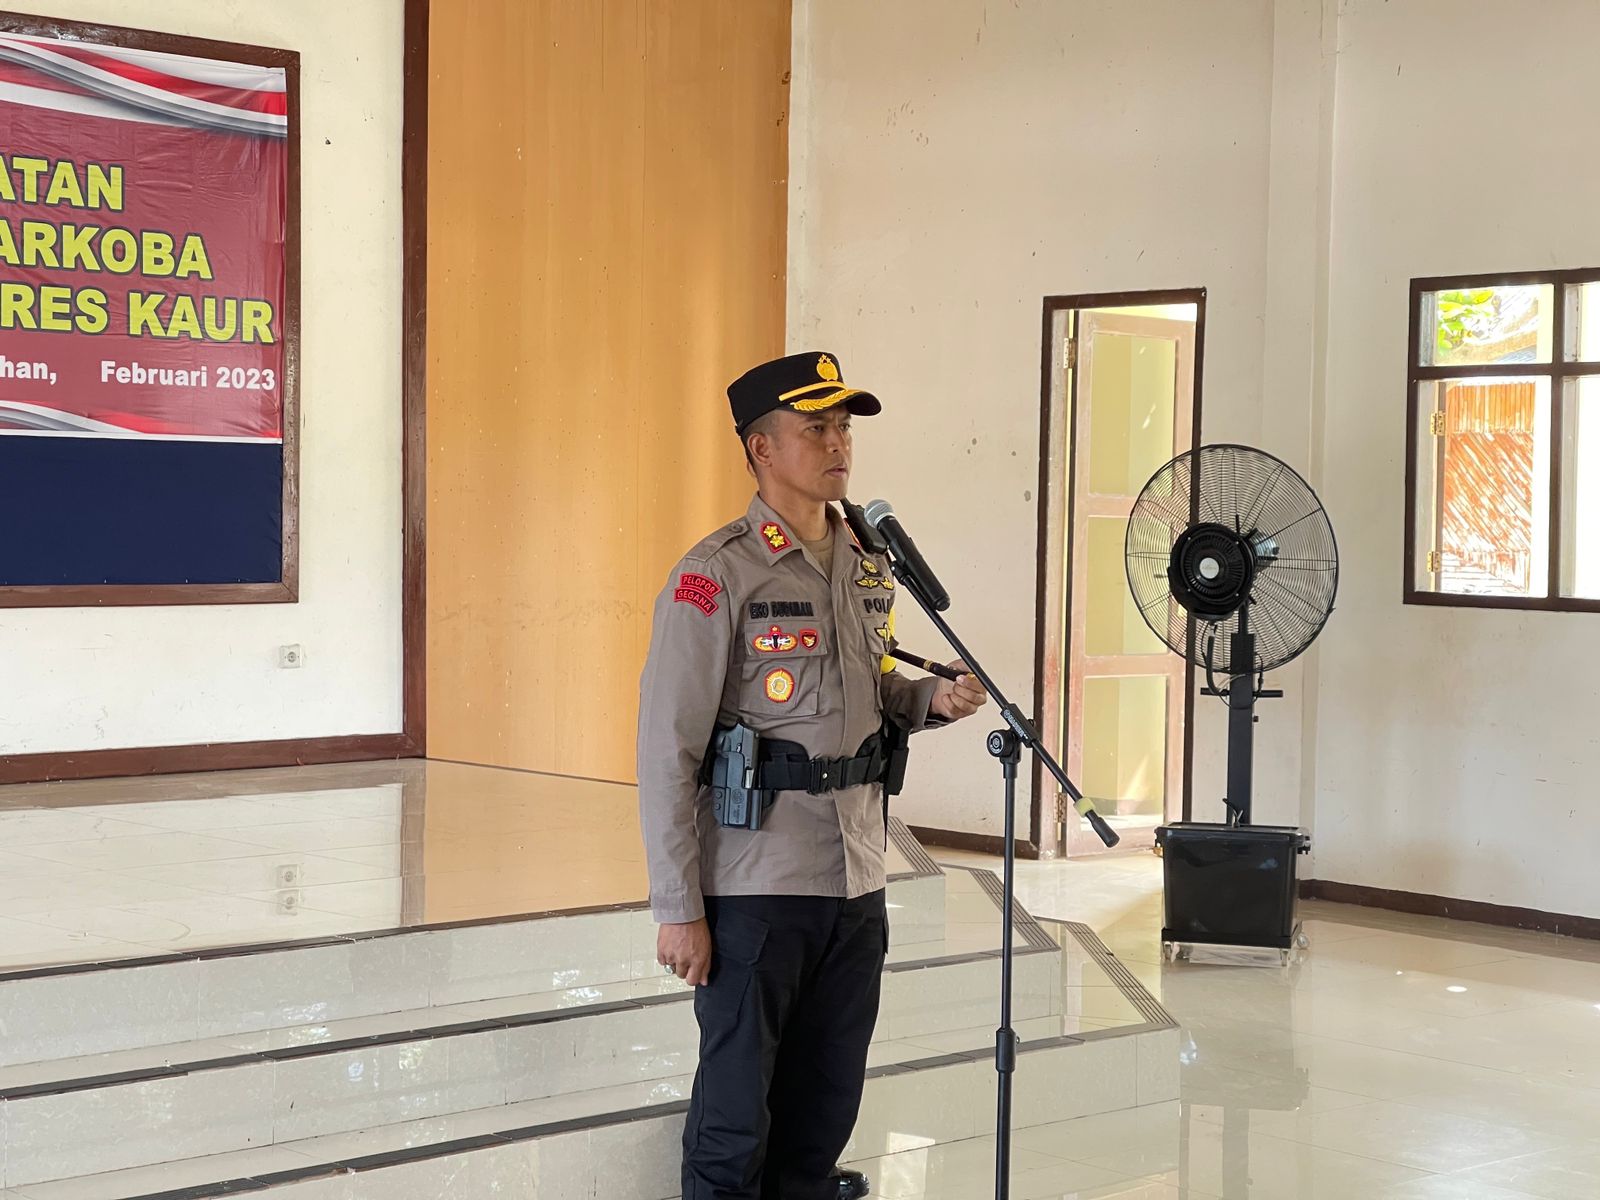 Kronologis Polisi Tertembak Pistol Polisi di Kaur Bengkulu, Kapolres Bilang Begini